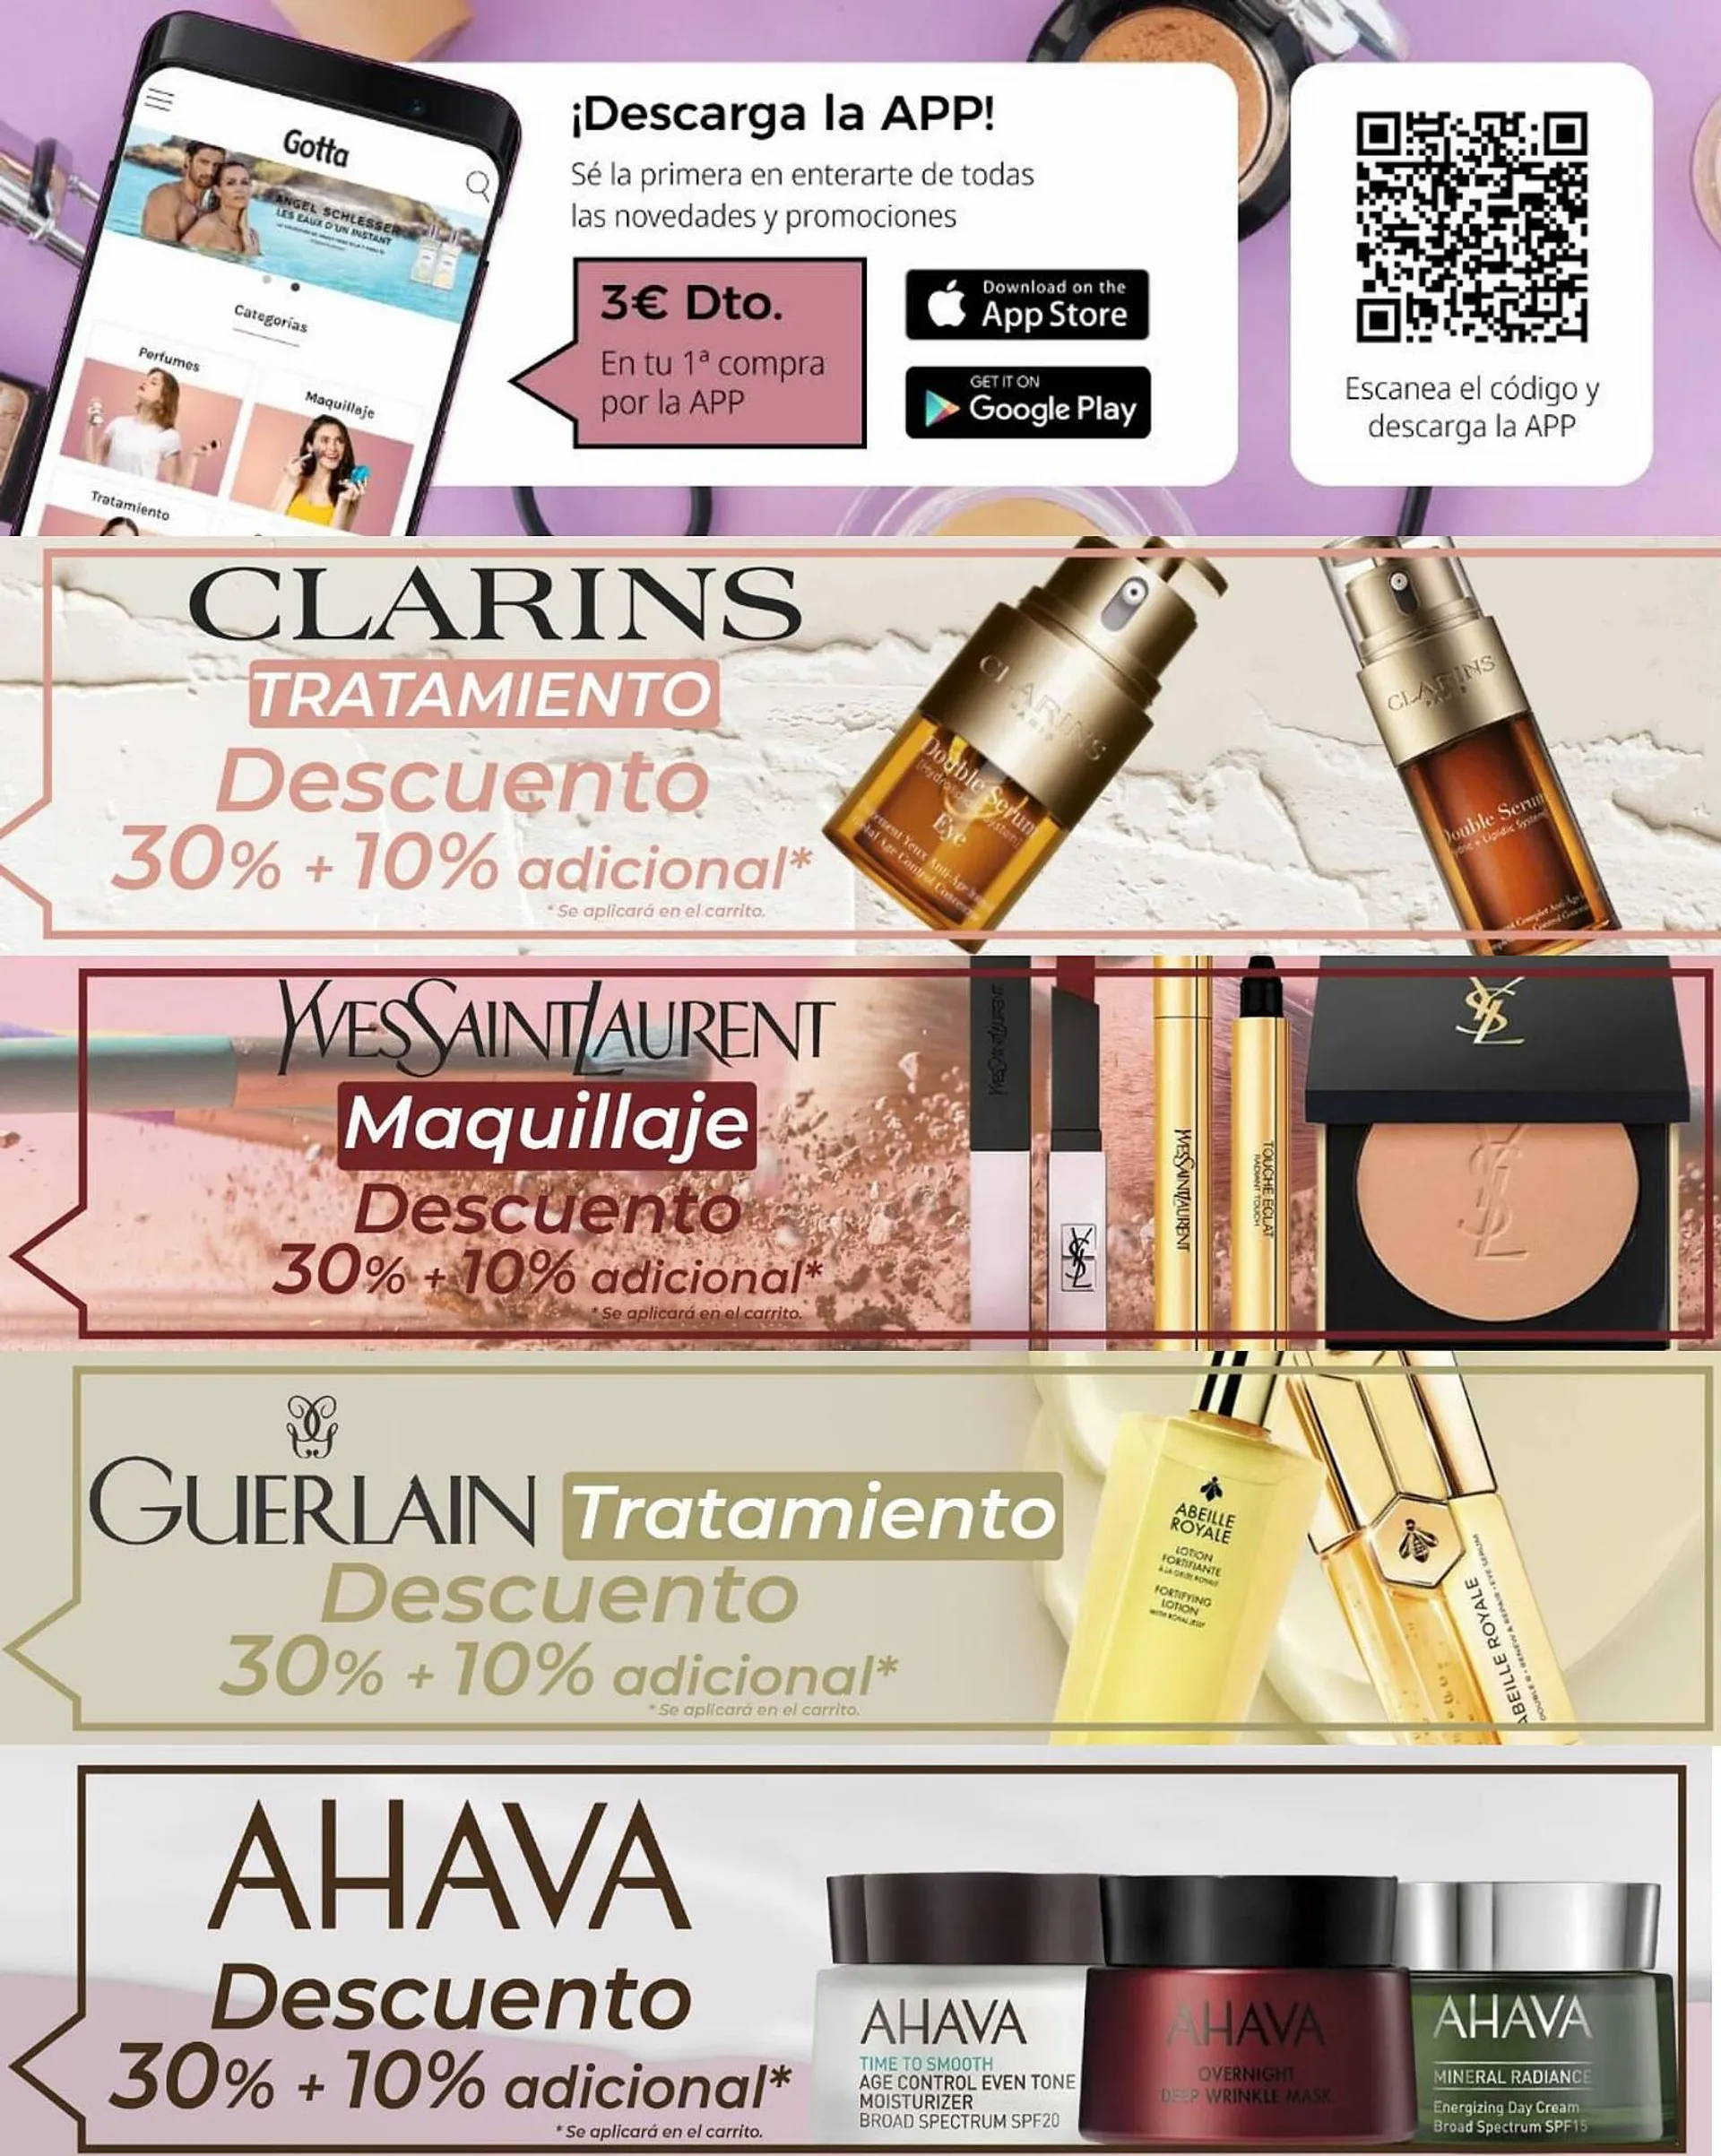 Catálogo Gotta Perfumeries - 1